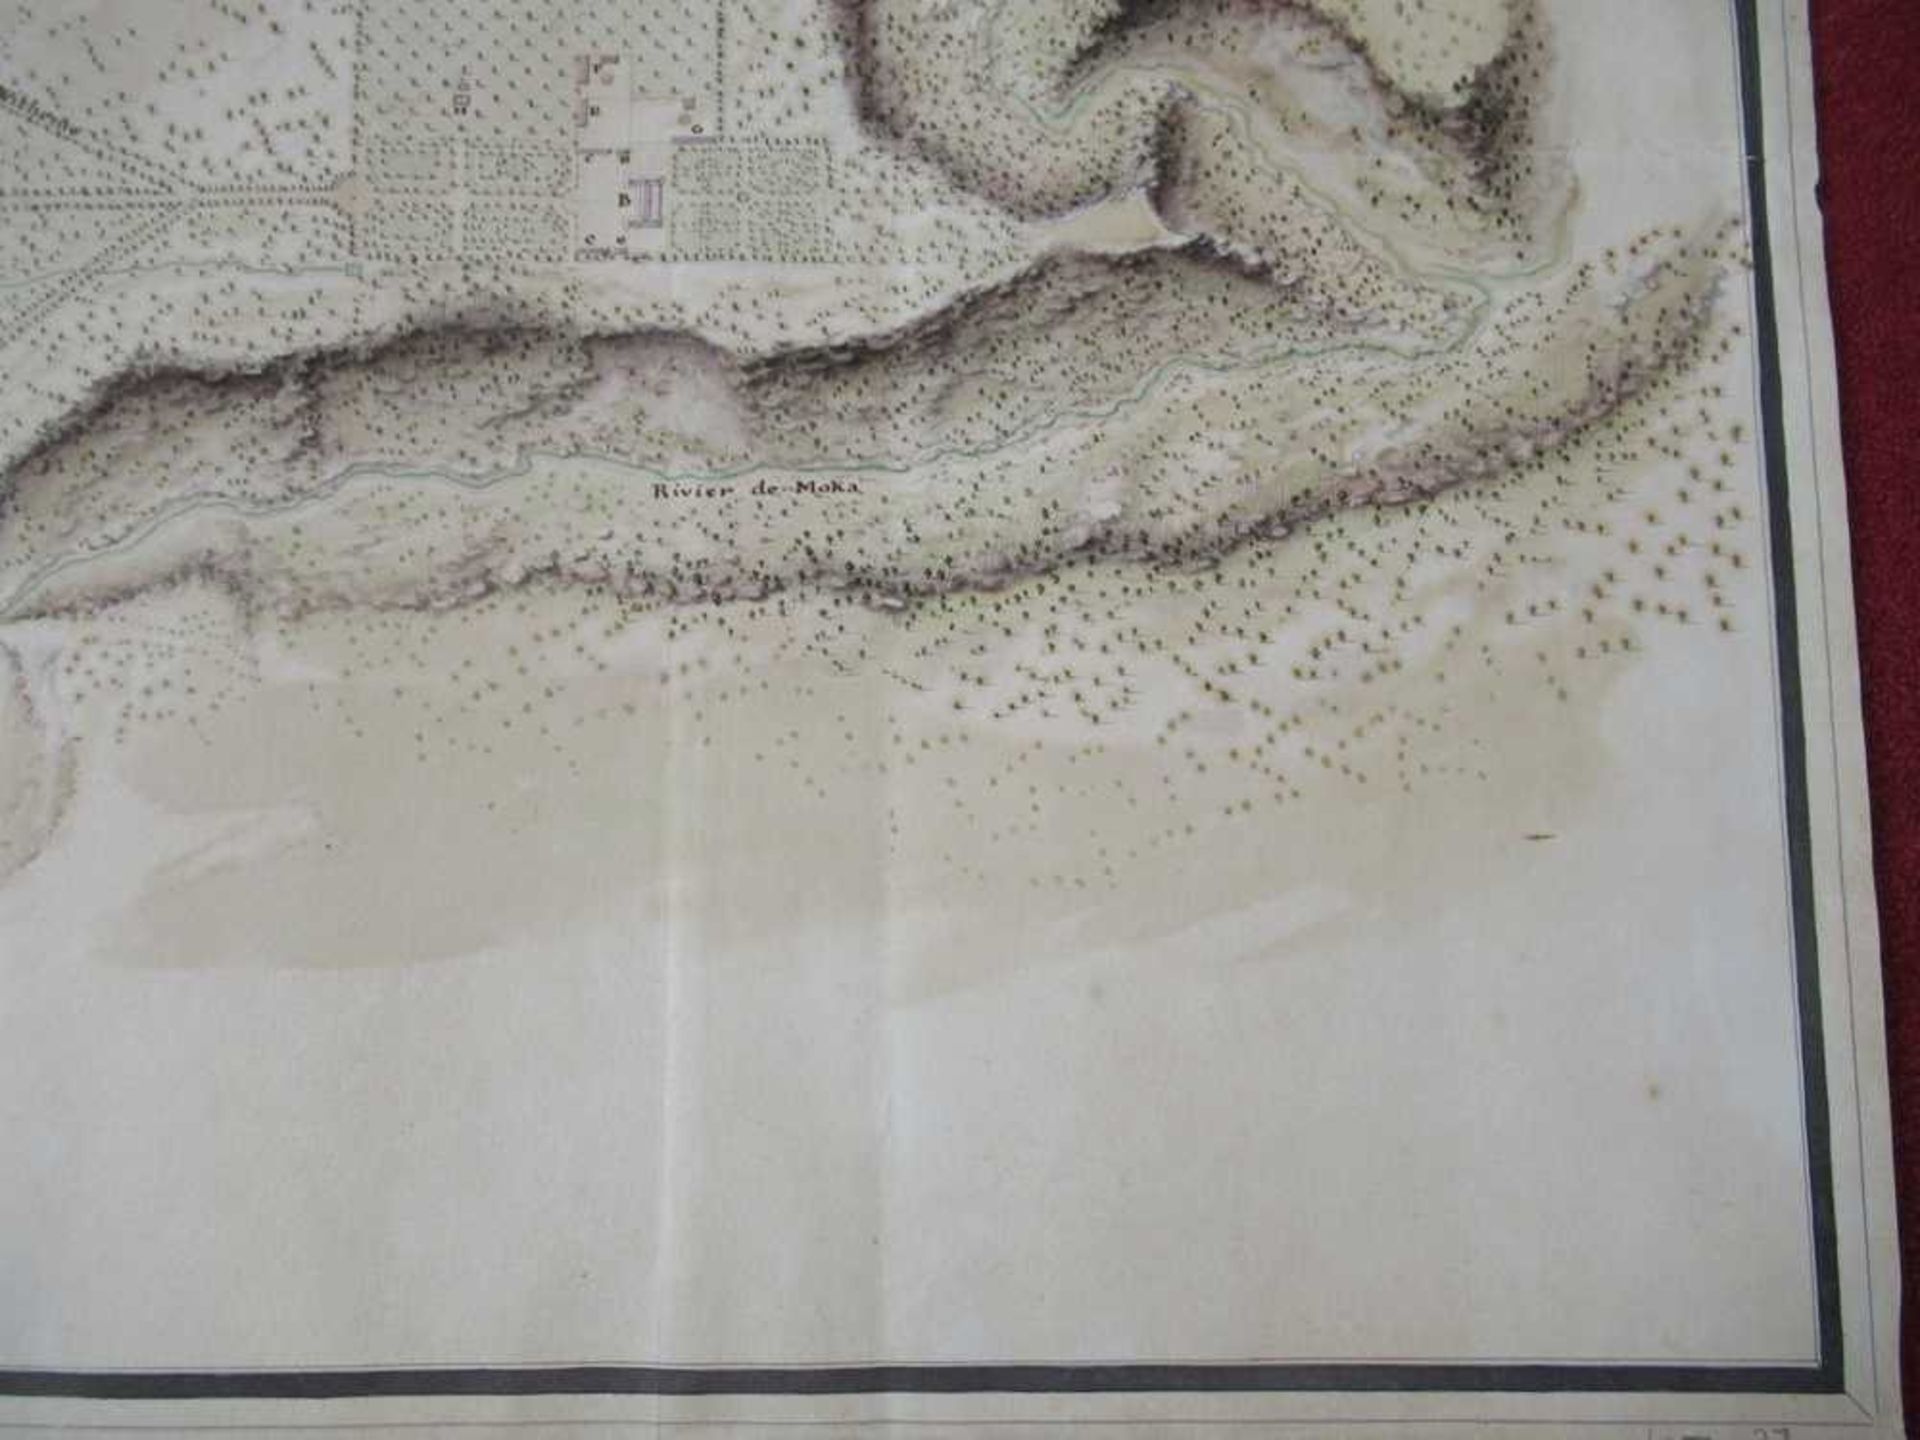 Mauritius, manuscript plan Plan de Rediuit Scituée entre le Quartier de Moka et célui des Plaines de - Image 3 of 9